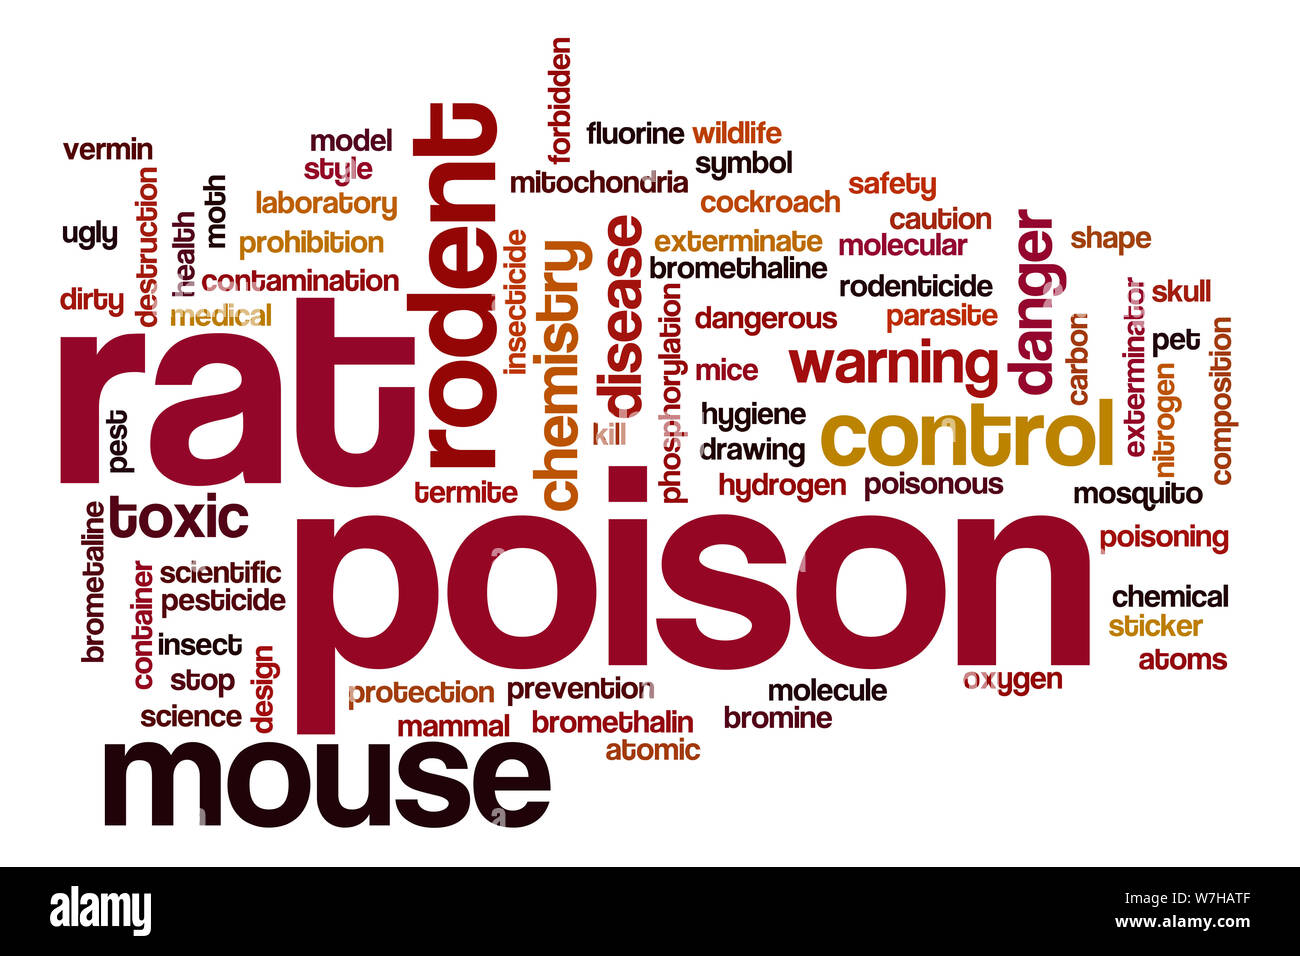 Rat poison word cloud concept Stock Photo